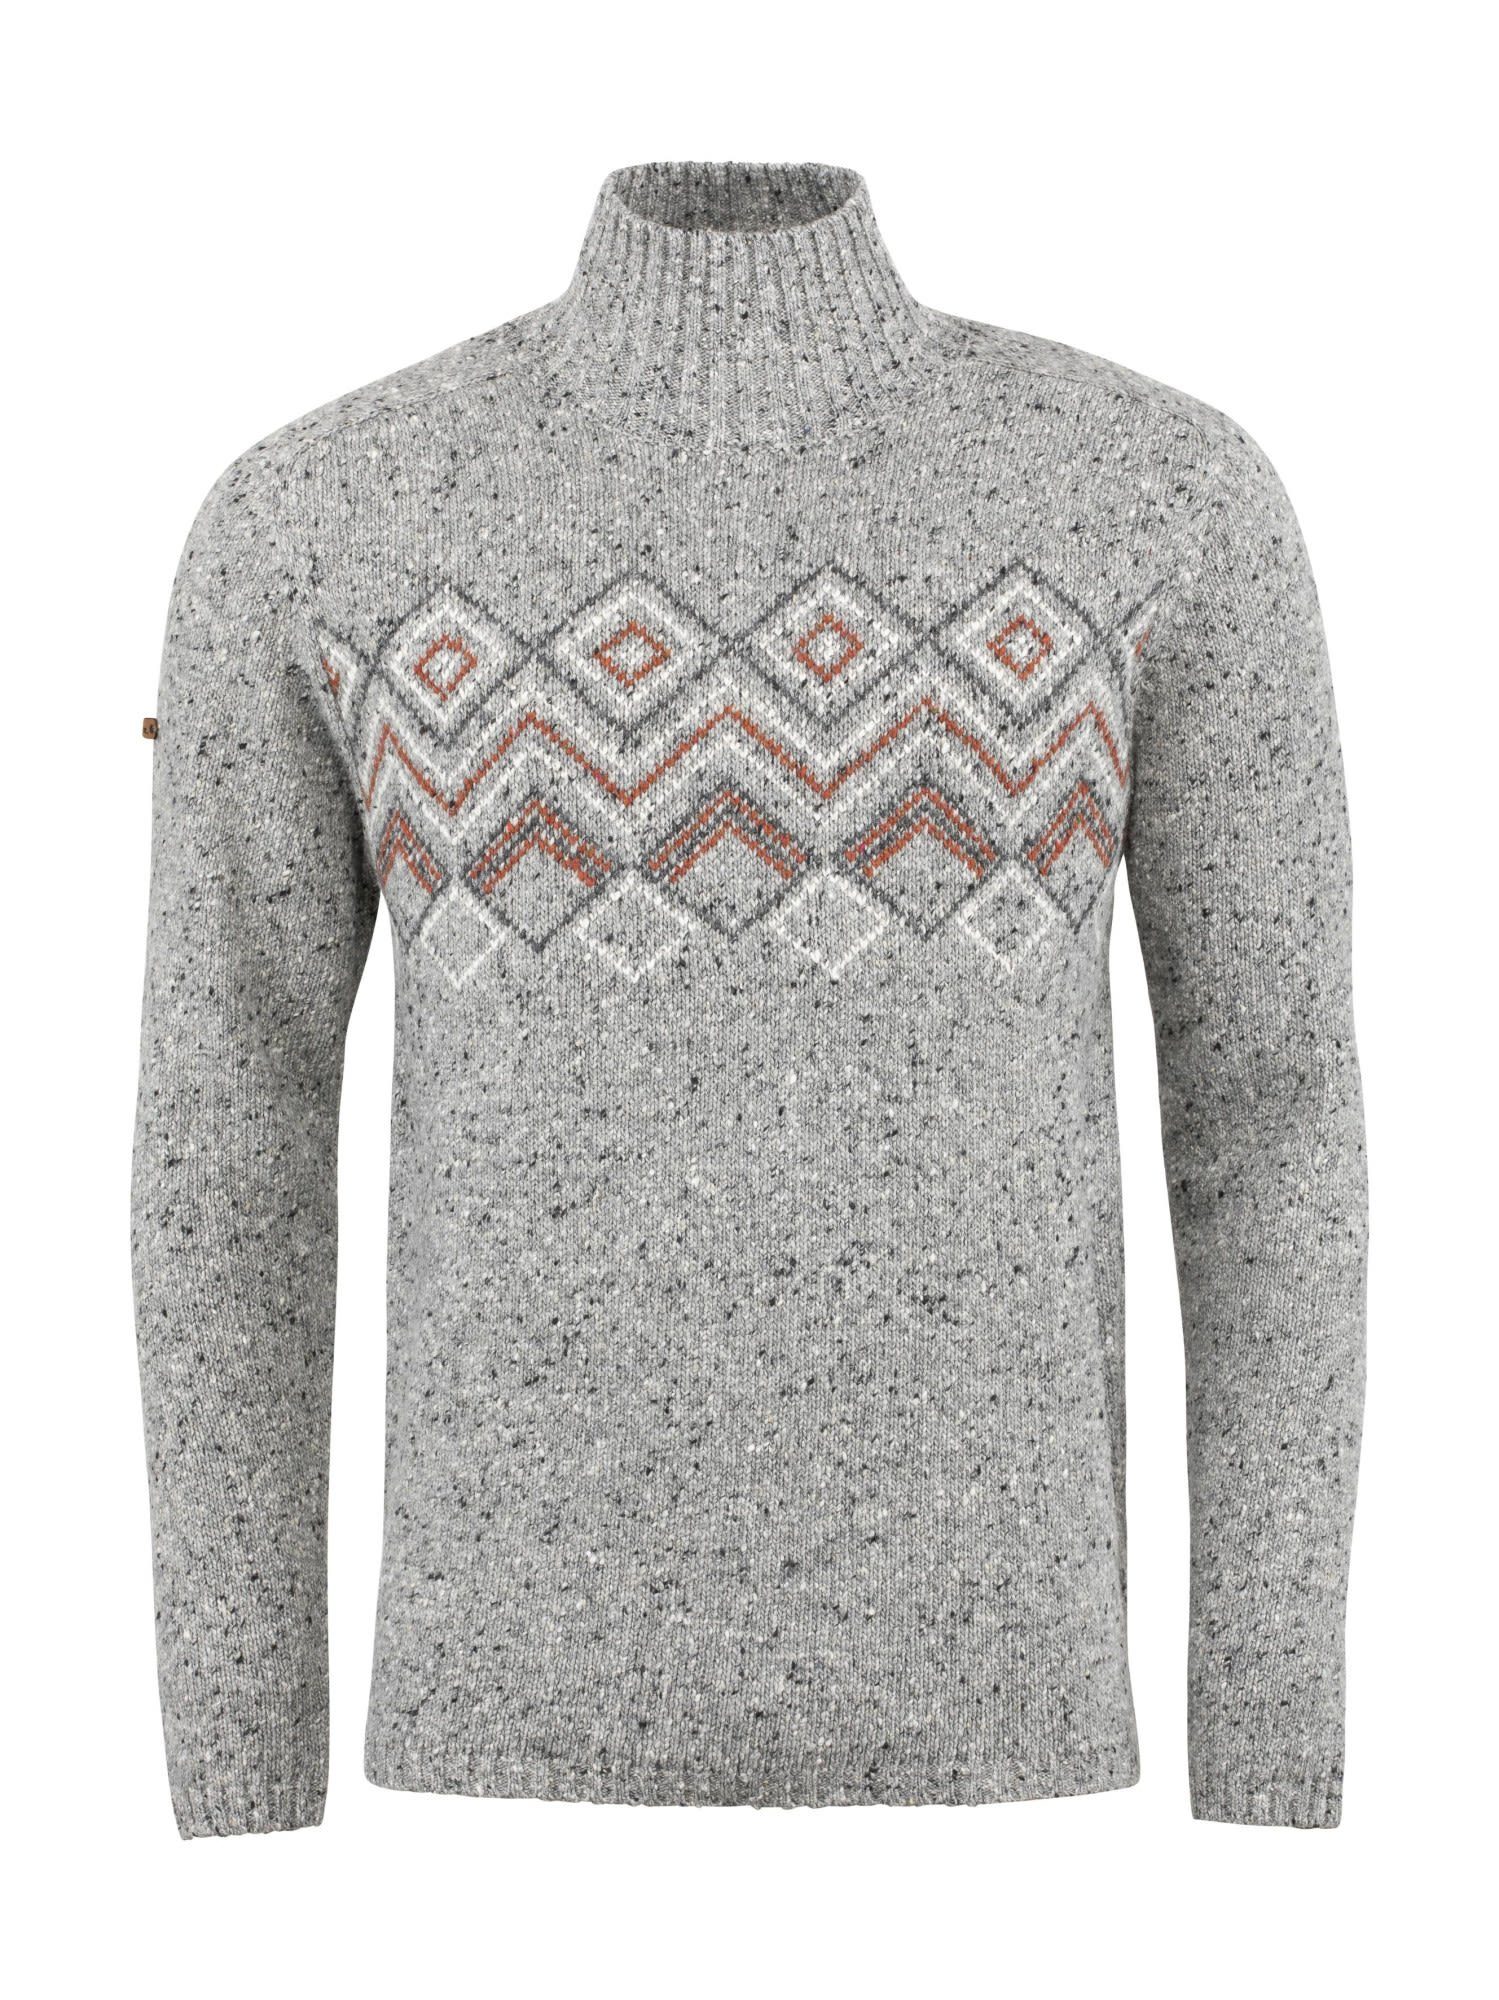 Grey M Chillaz Sweater Chillaz Fleecepullover Melange Herren Selfoss